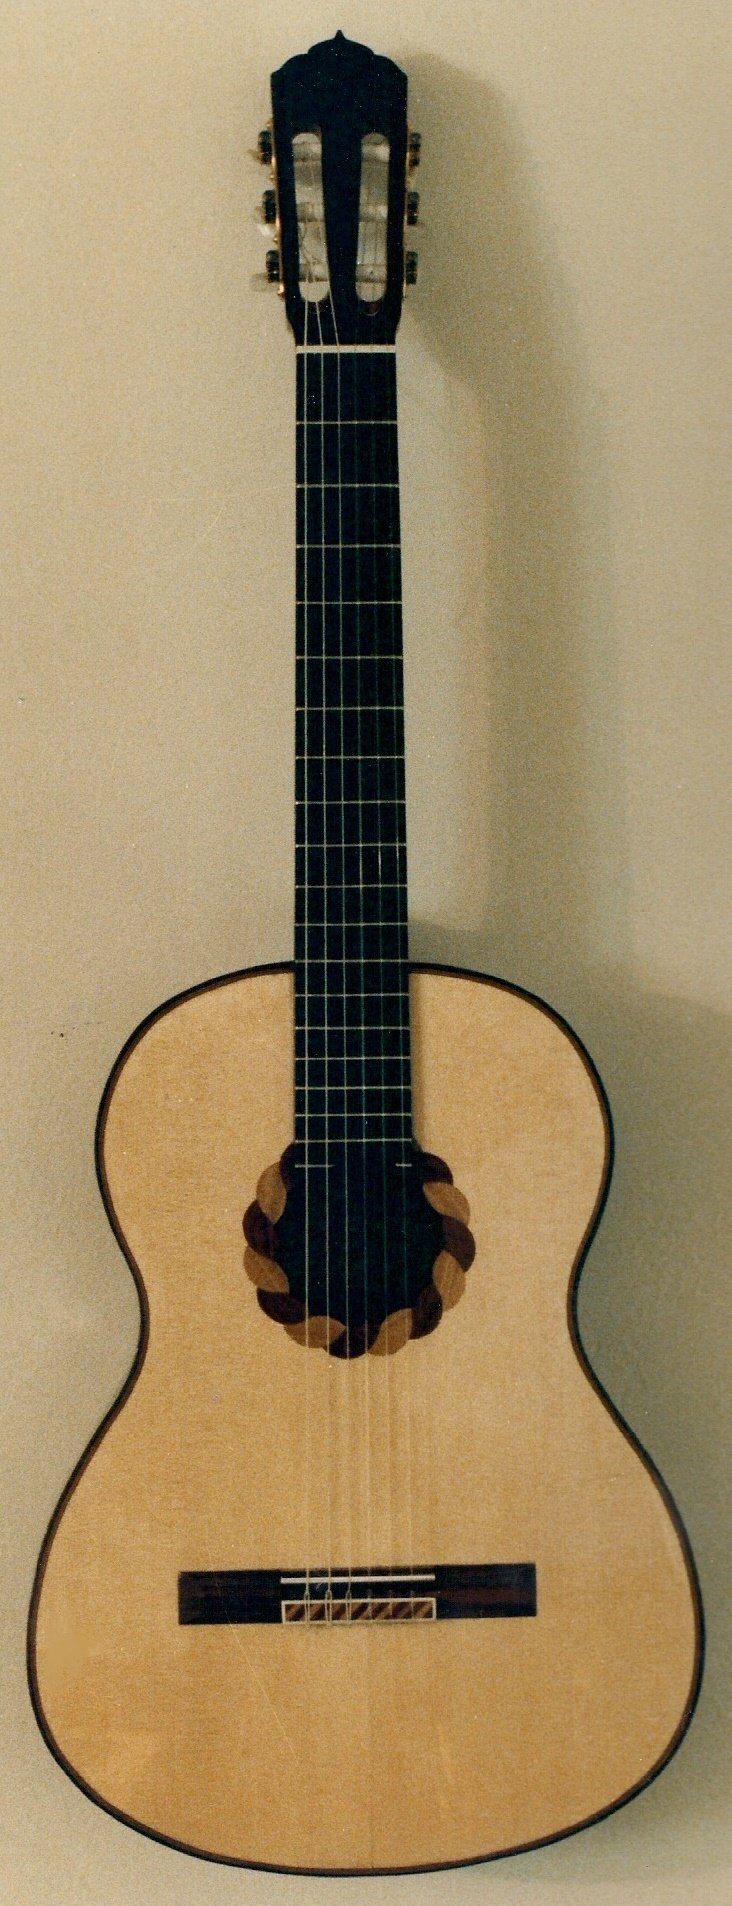 Jordan Classical Guitar.jpg